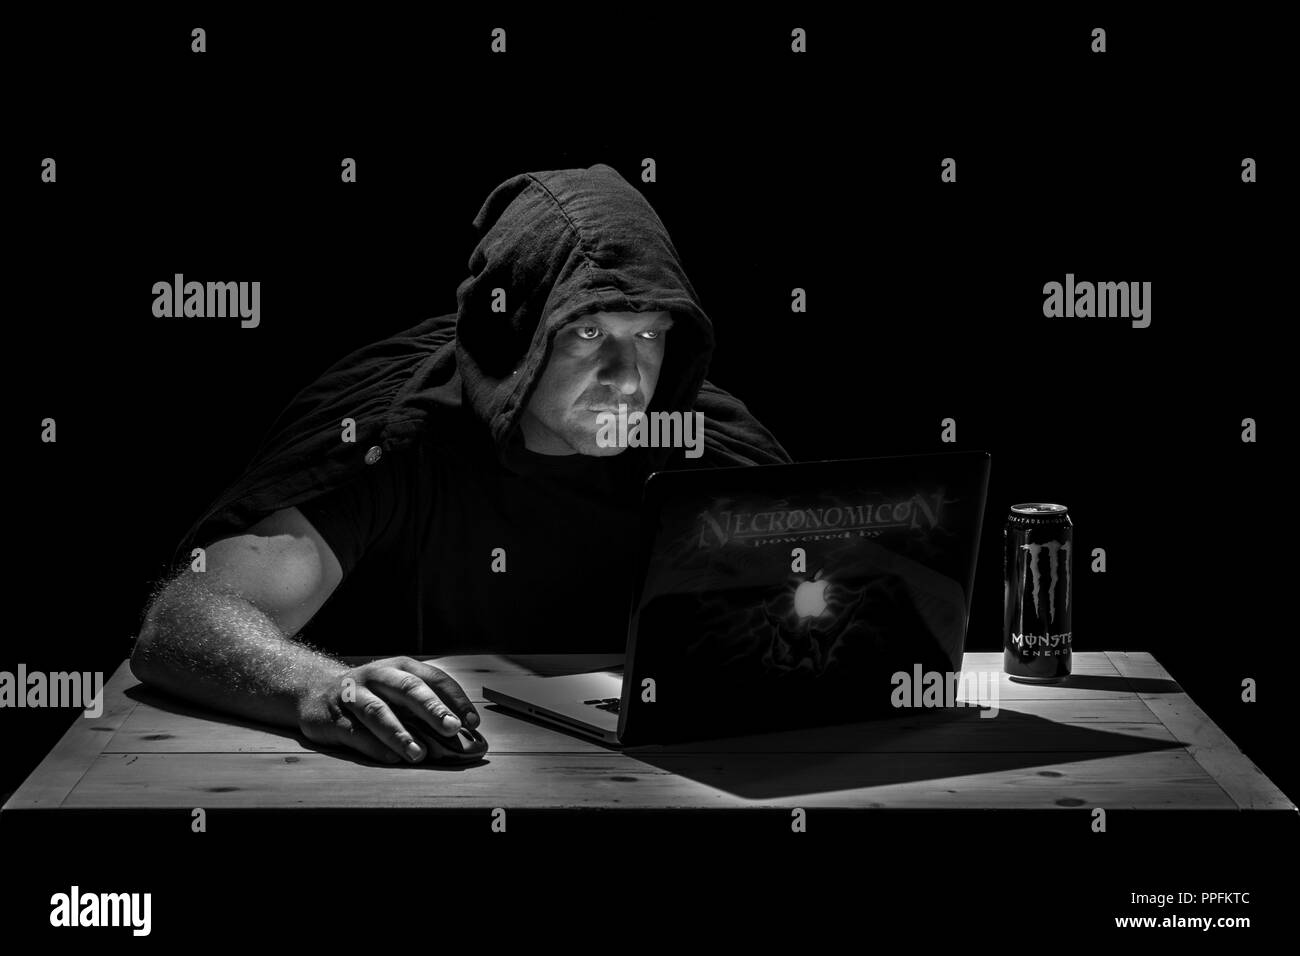 El hombre está sentado a la mesa en una habitación oscura, mirando en su portátil, símbolo imagen para hacker, ciberdelincuencia, Alemania Foto de stock